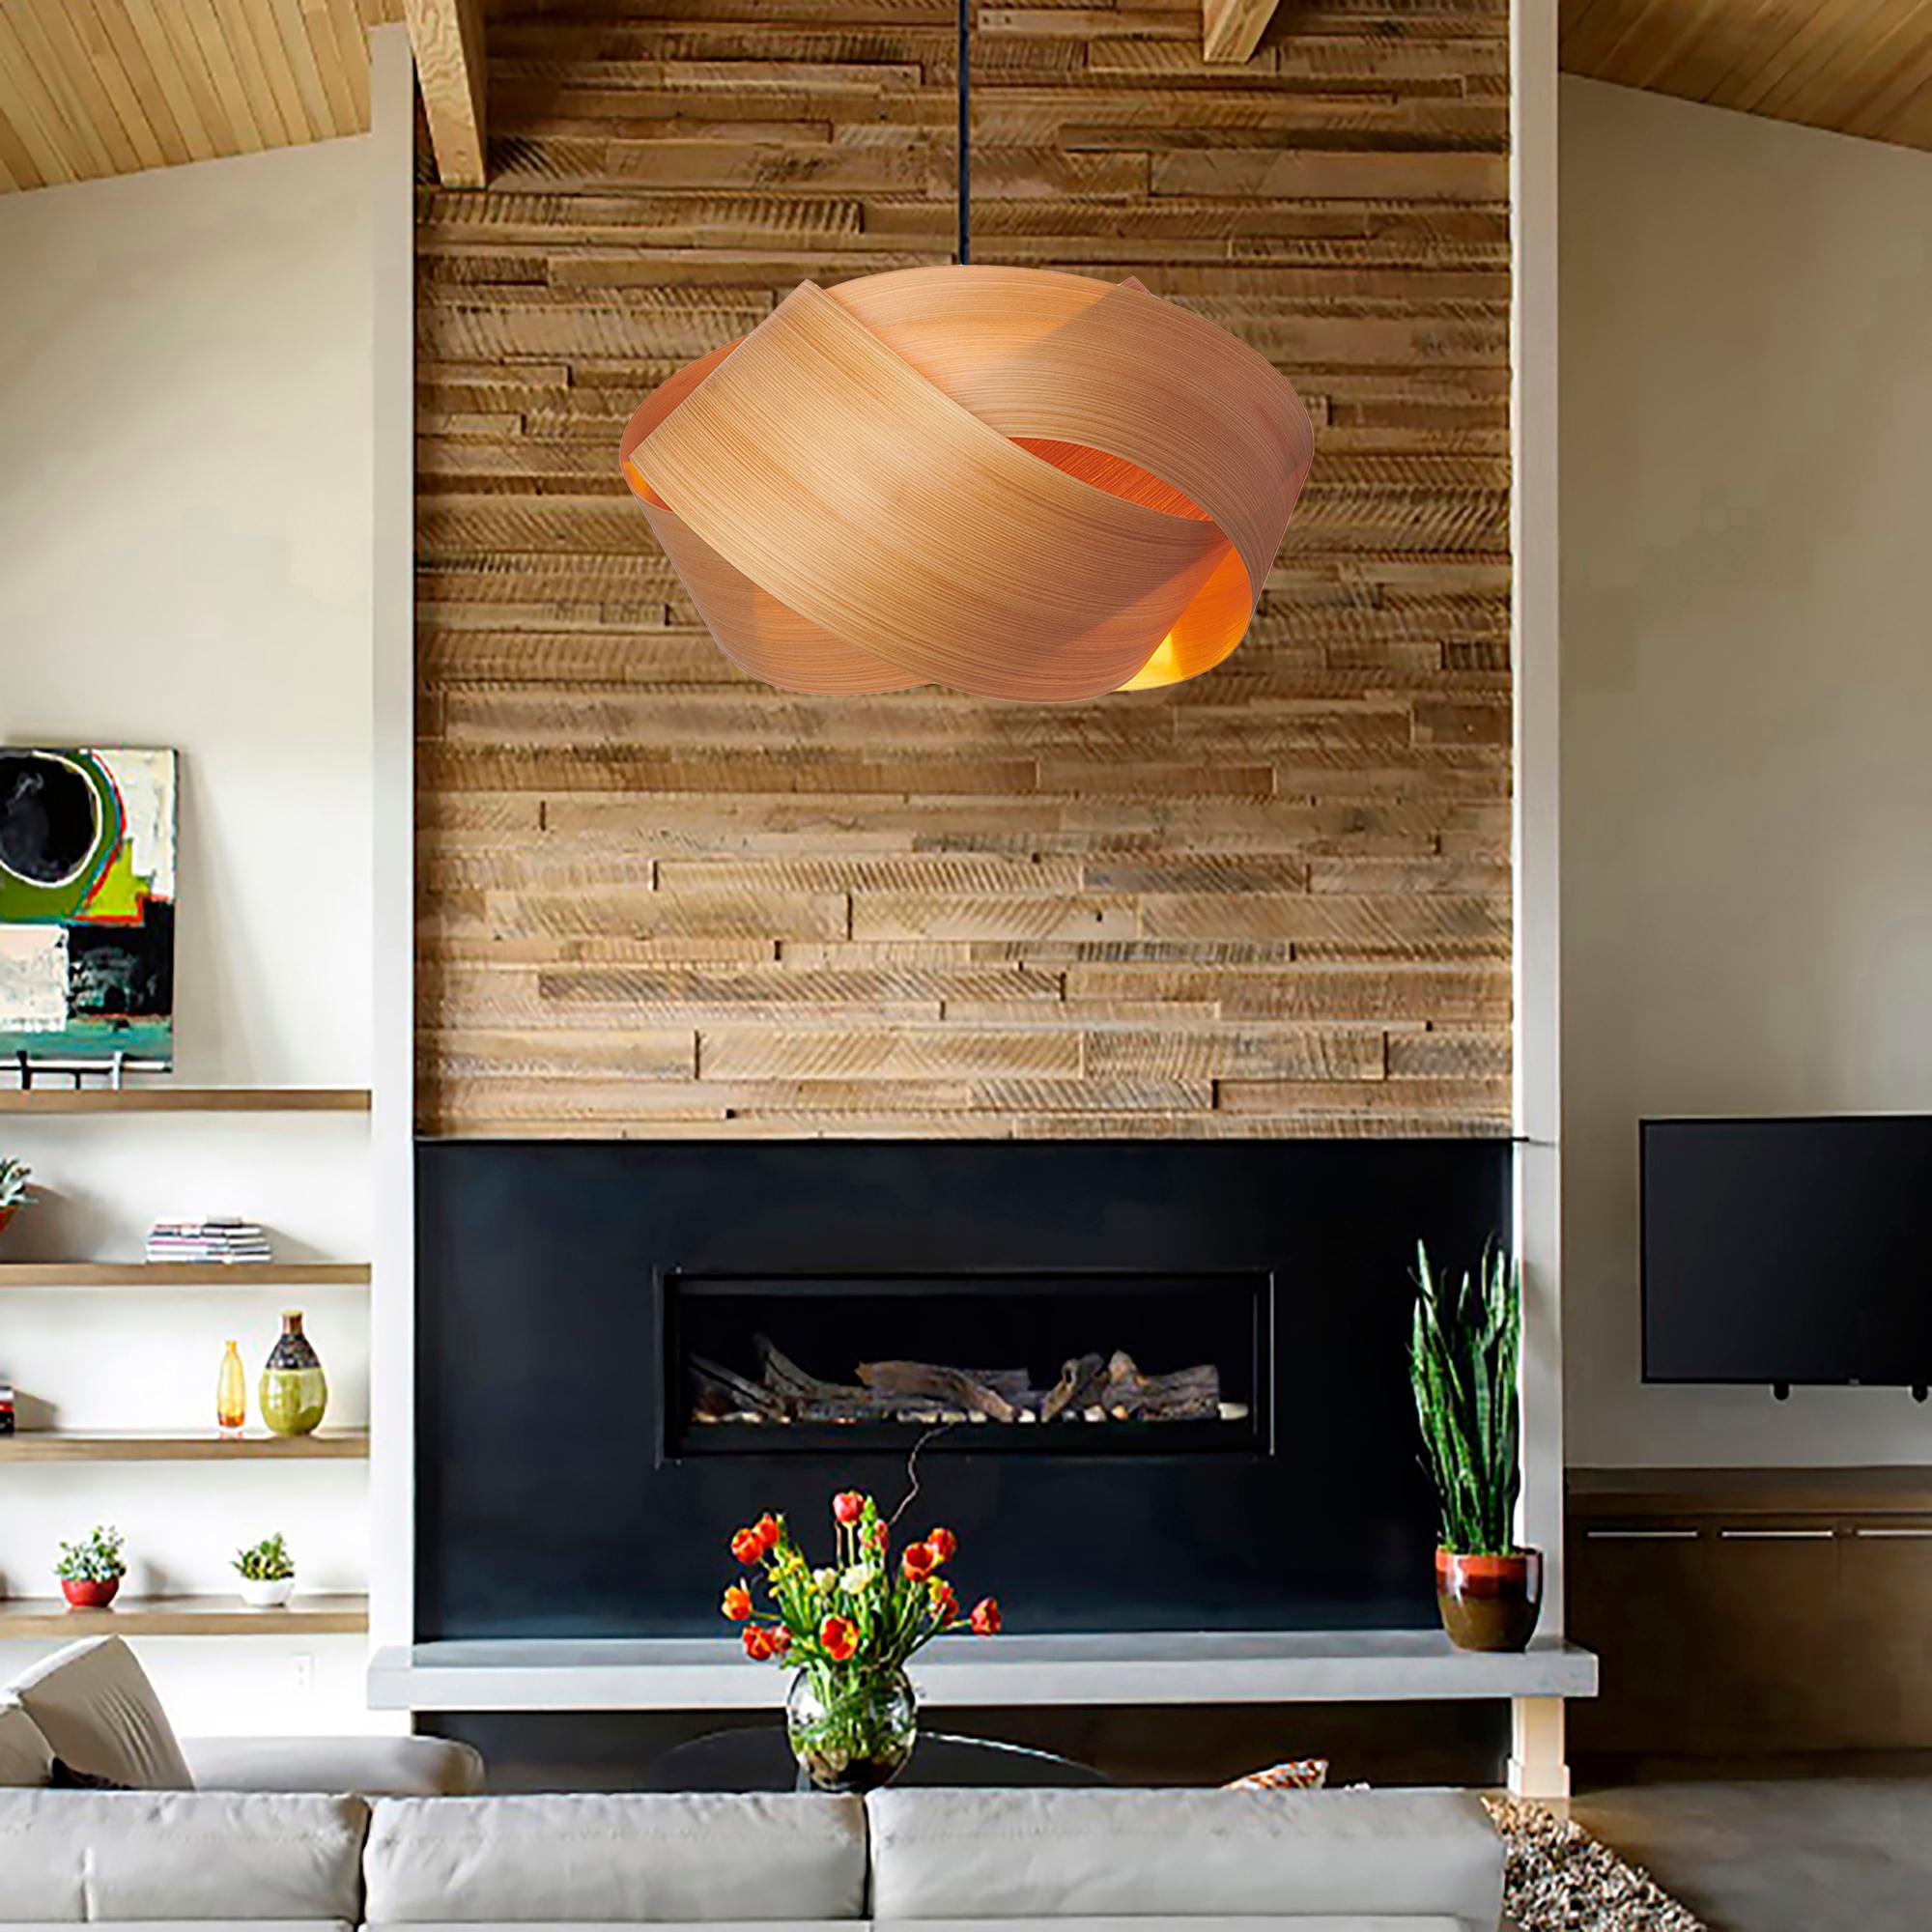 Die Pendelleuchte Serene ist eine zeitgenössische Mid-Century-Modern-Leuchte mit skandinavischem Design und organisch-moderner Komposition. Diese minimalistische, luxuriöse Pendelleuchte aus Holzfurnier ist die perfekte Lösung, um einen Hauch von